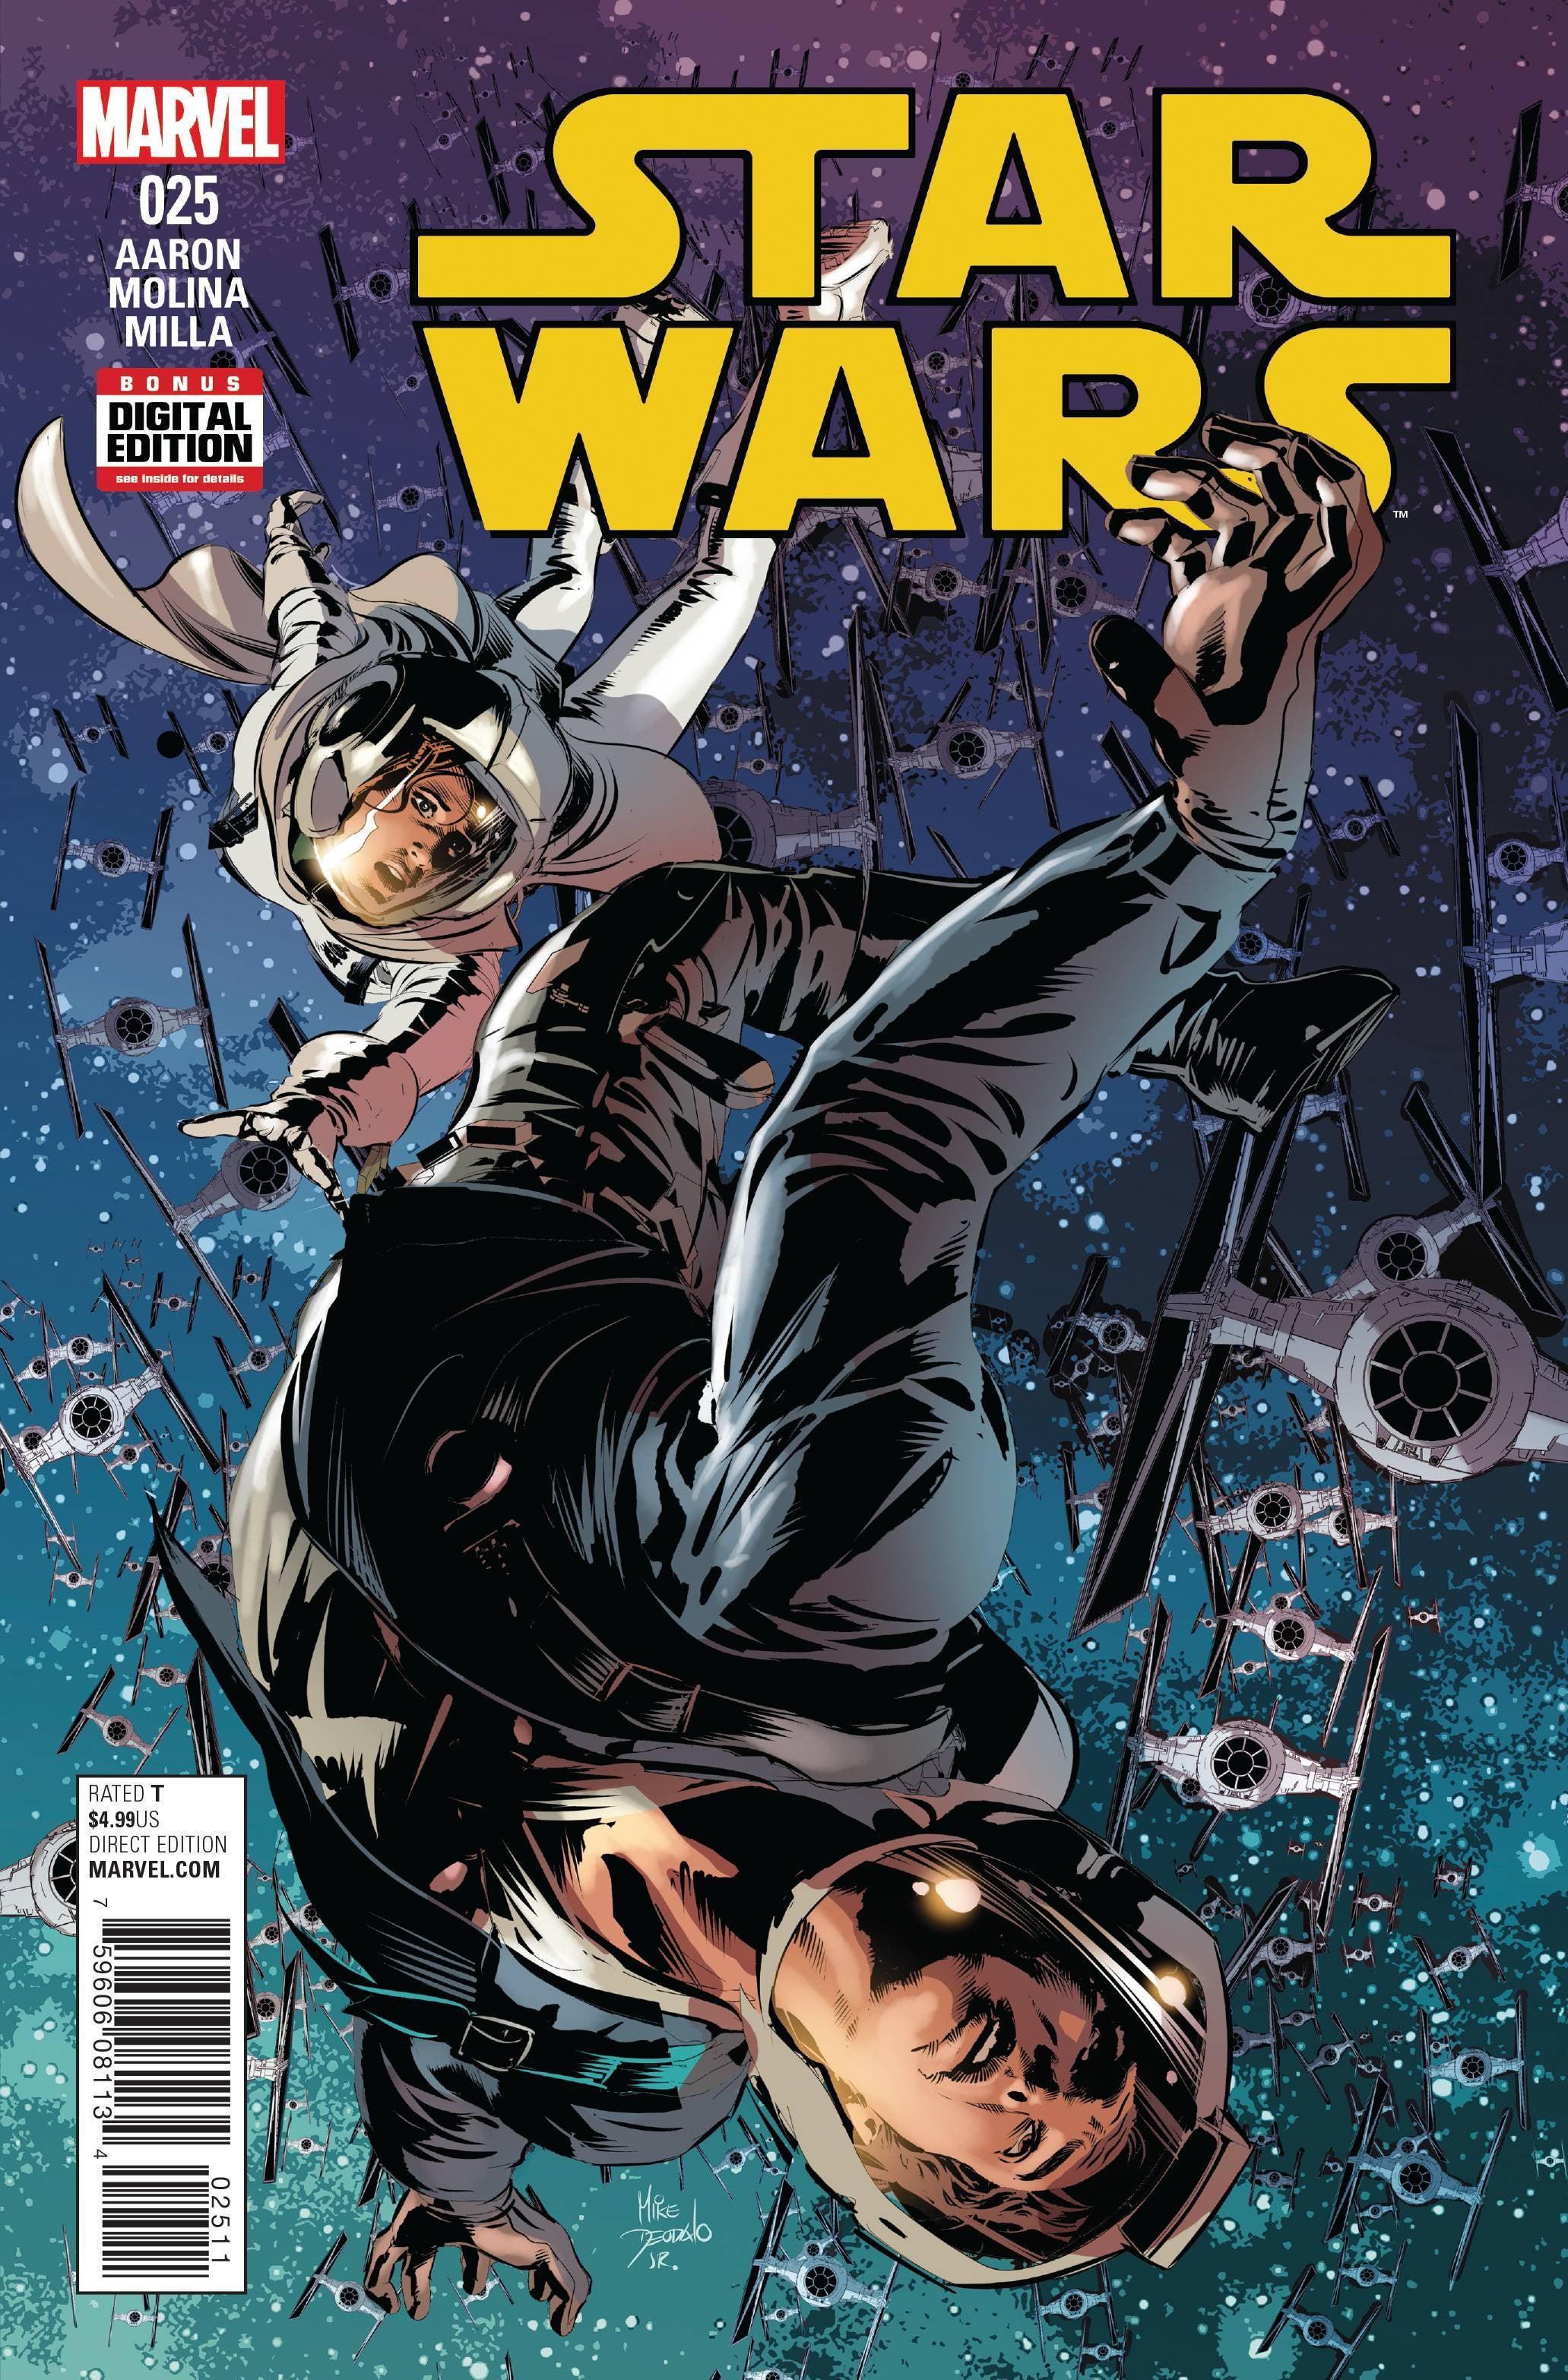 STAR WARS VOL 4 (2015) #25 - Kings Comics